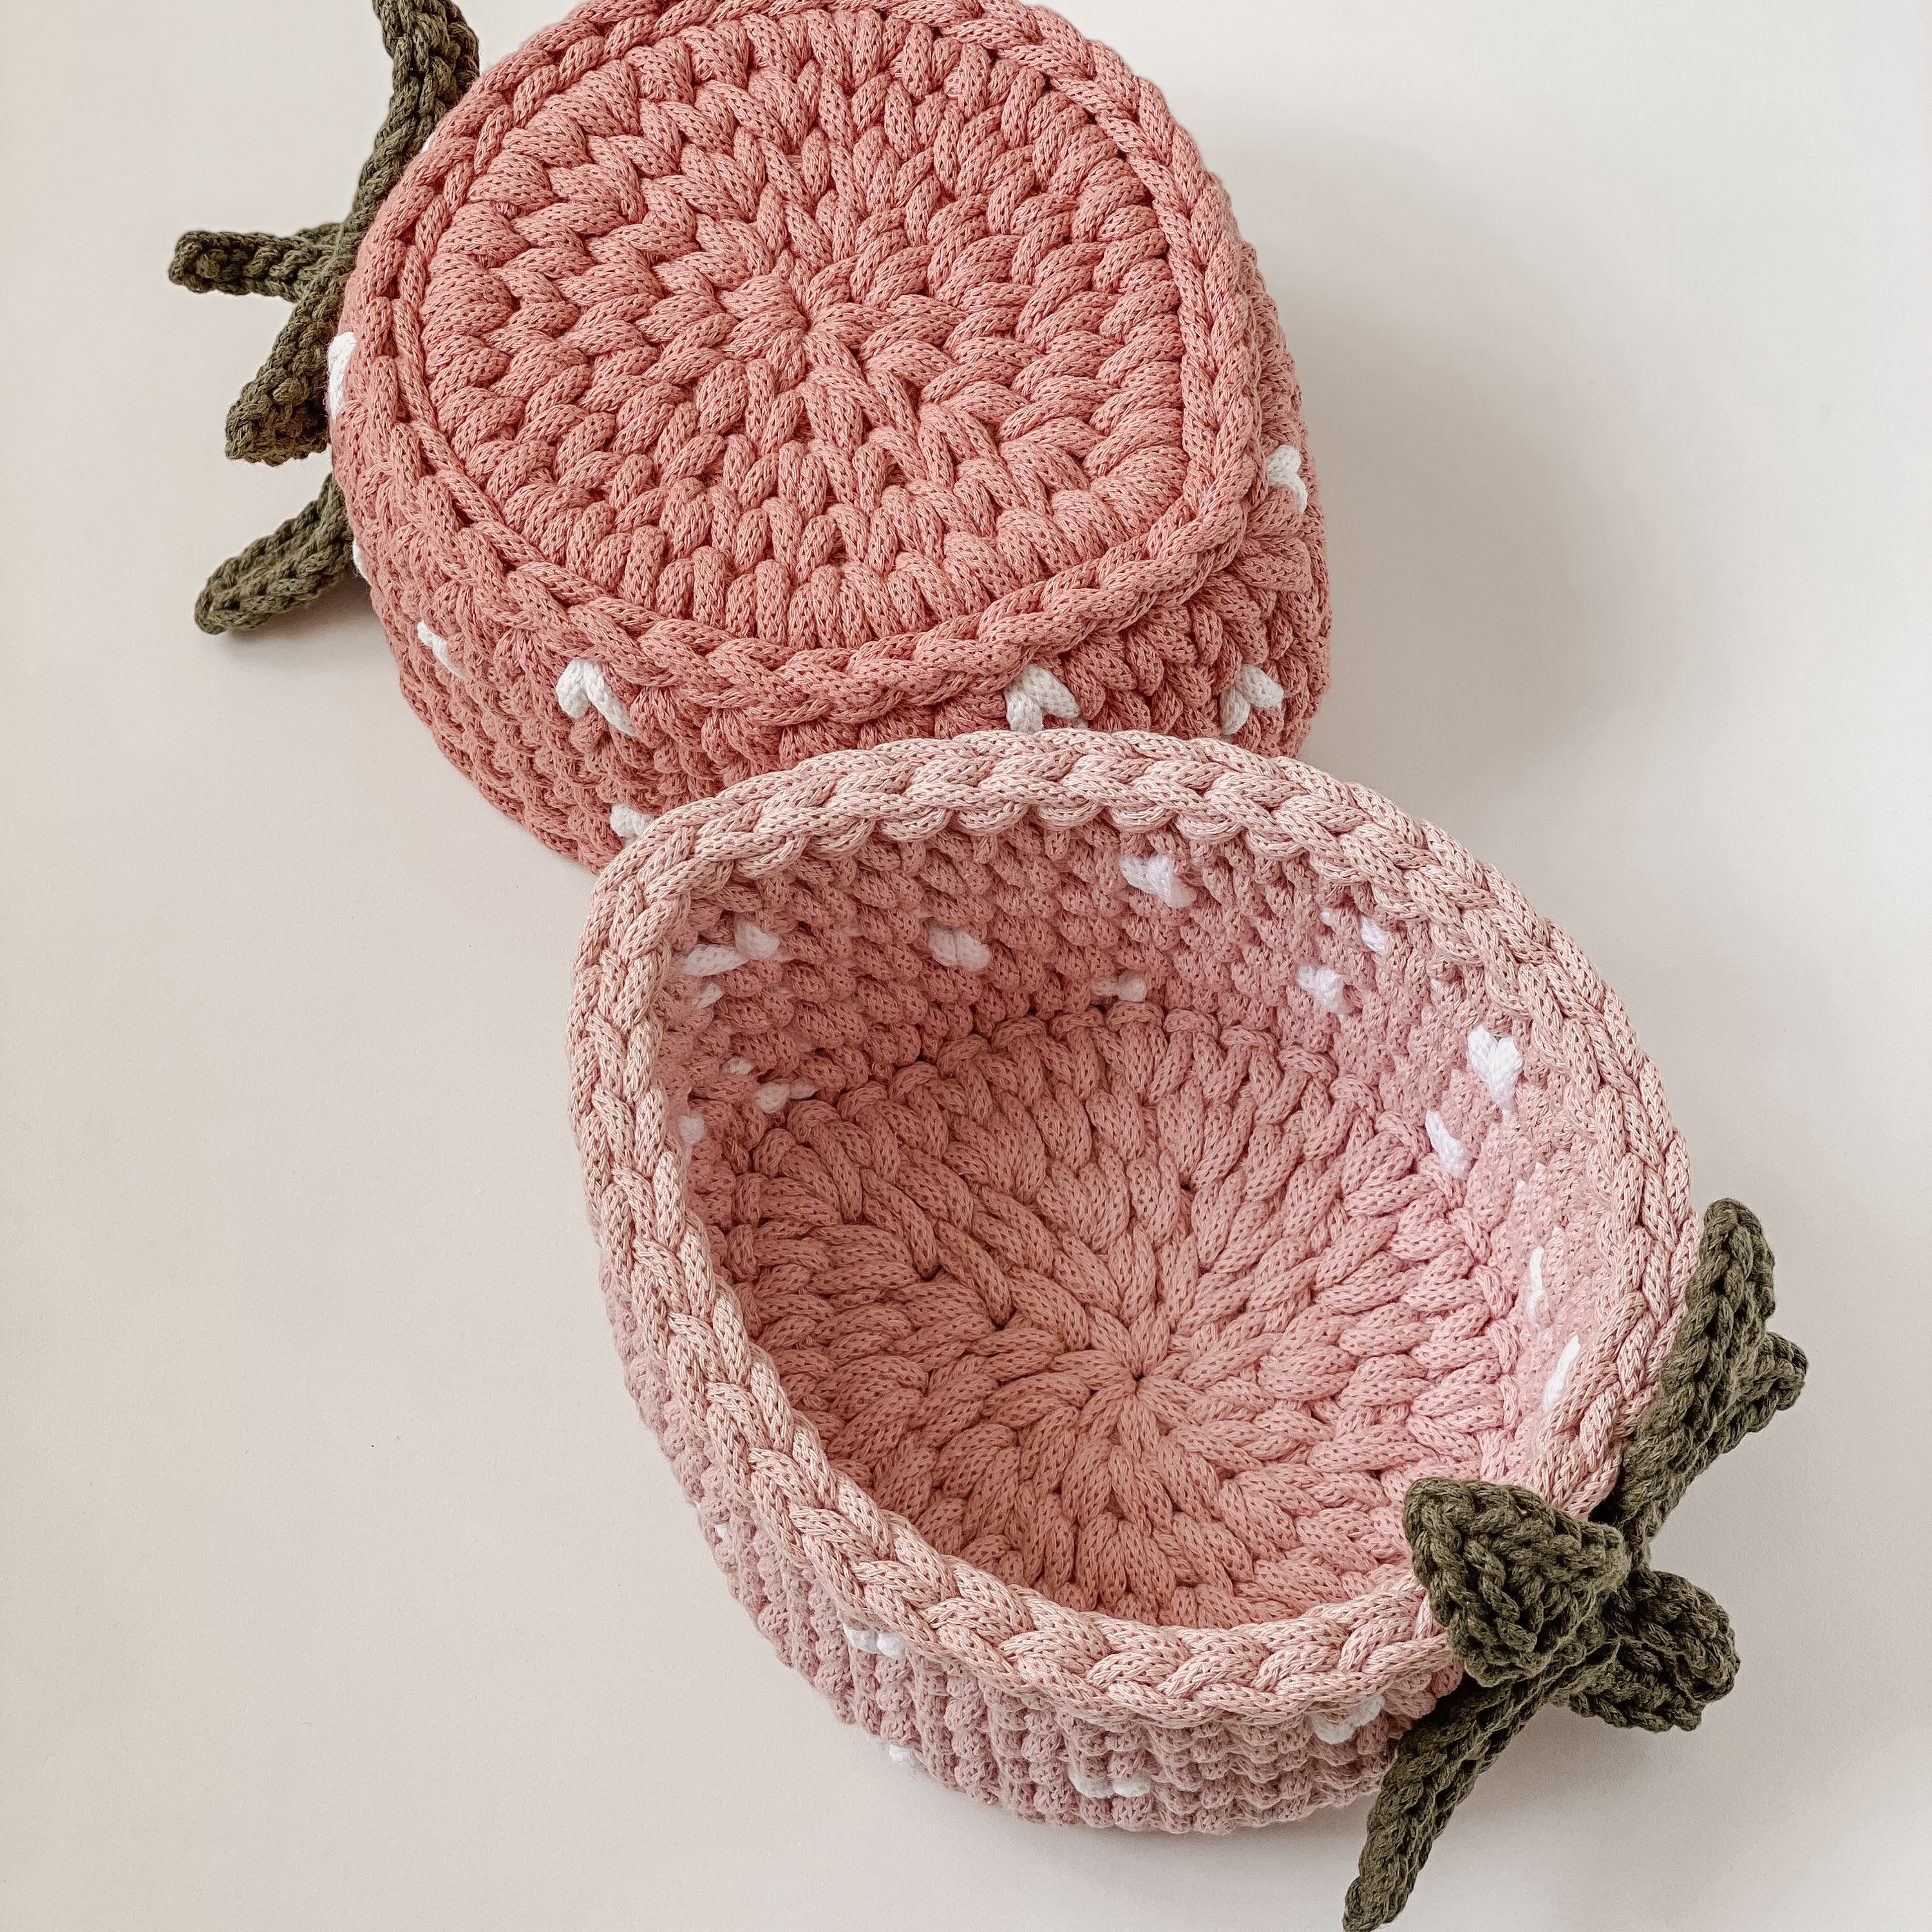 Flower Crochet Kit Plant Pot Love Crochet Kit Strawberry Crochet Kit Daisy Crochet  Kit Crochet Tulip Kit Crochet Sunflower Kit 